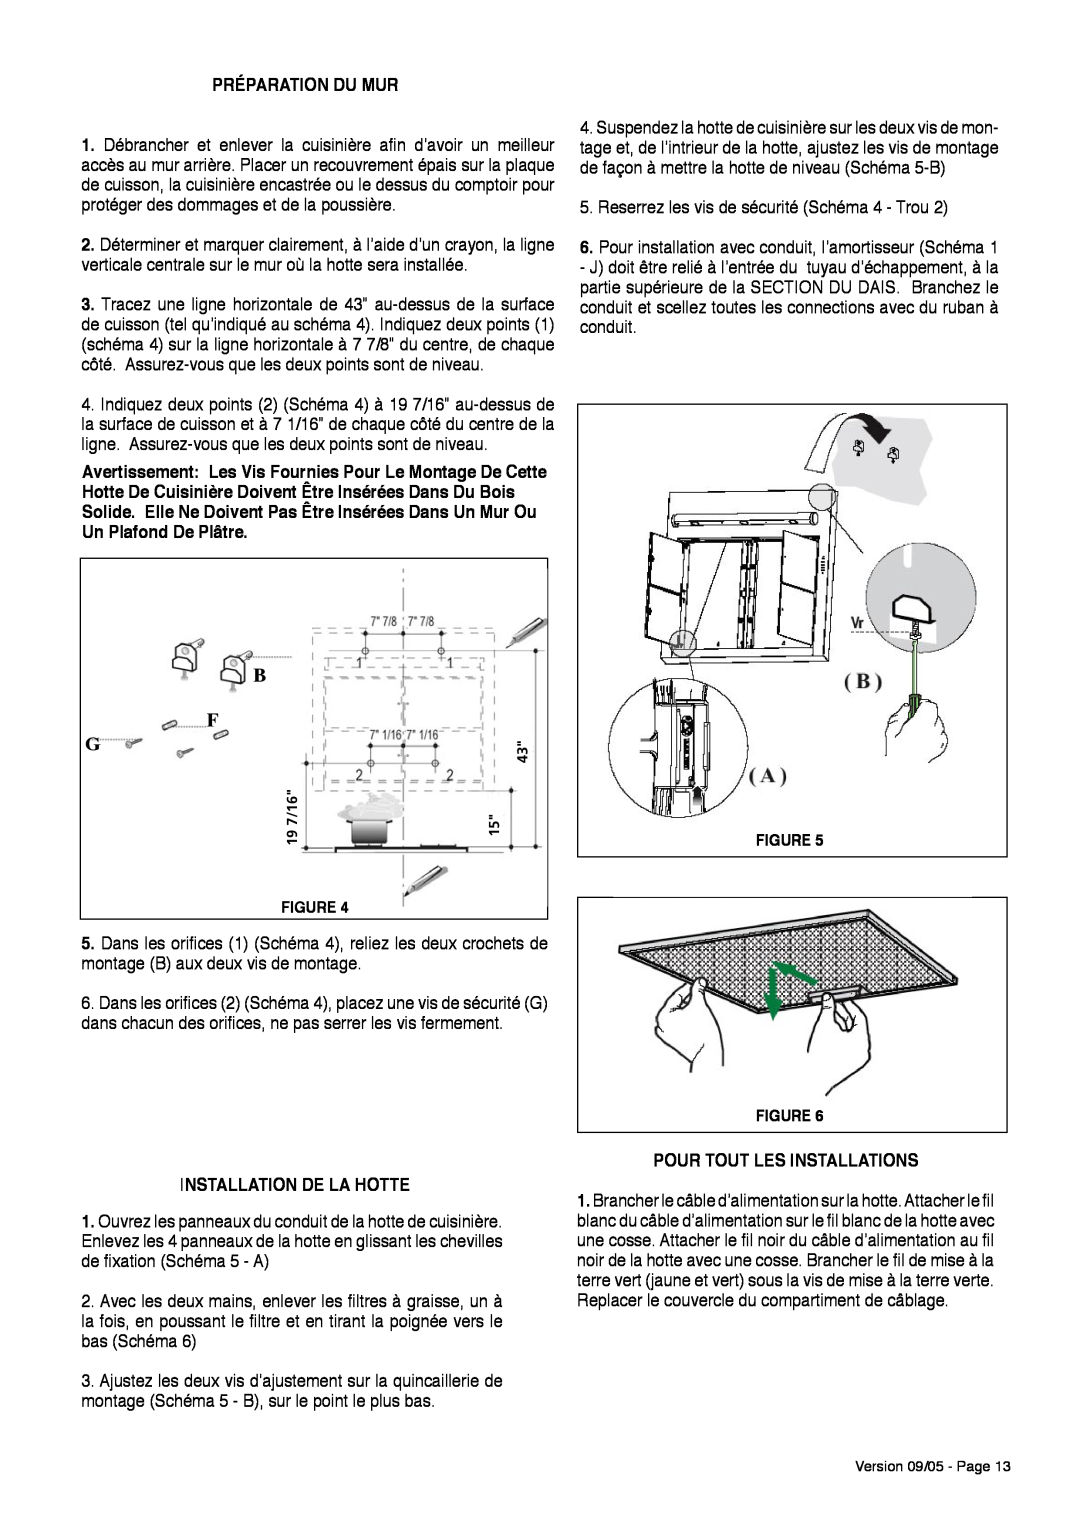 Faber Matrix installation instructions Préparation Du Mur, Installation De La Hotte, Pour Tout Les Installations 